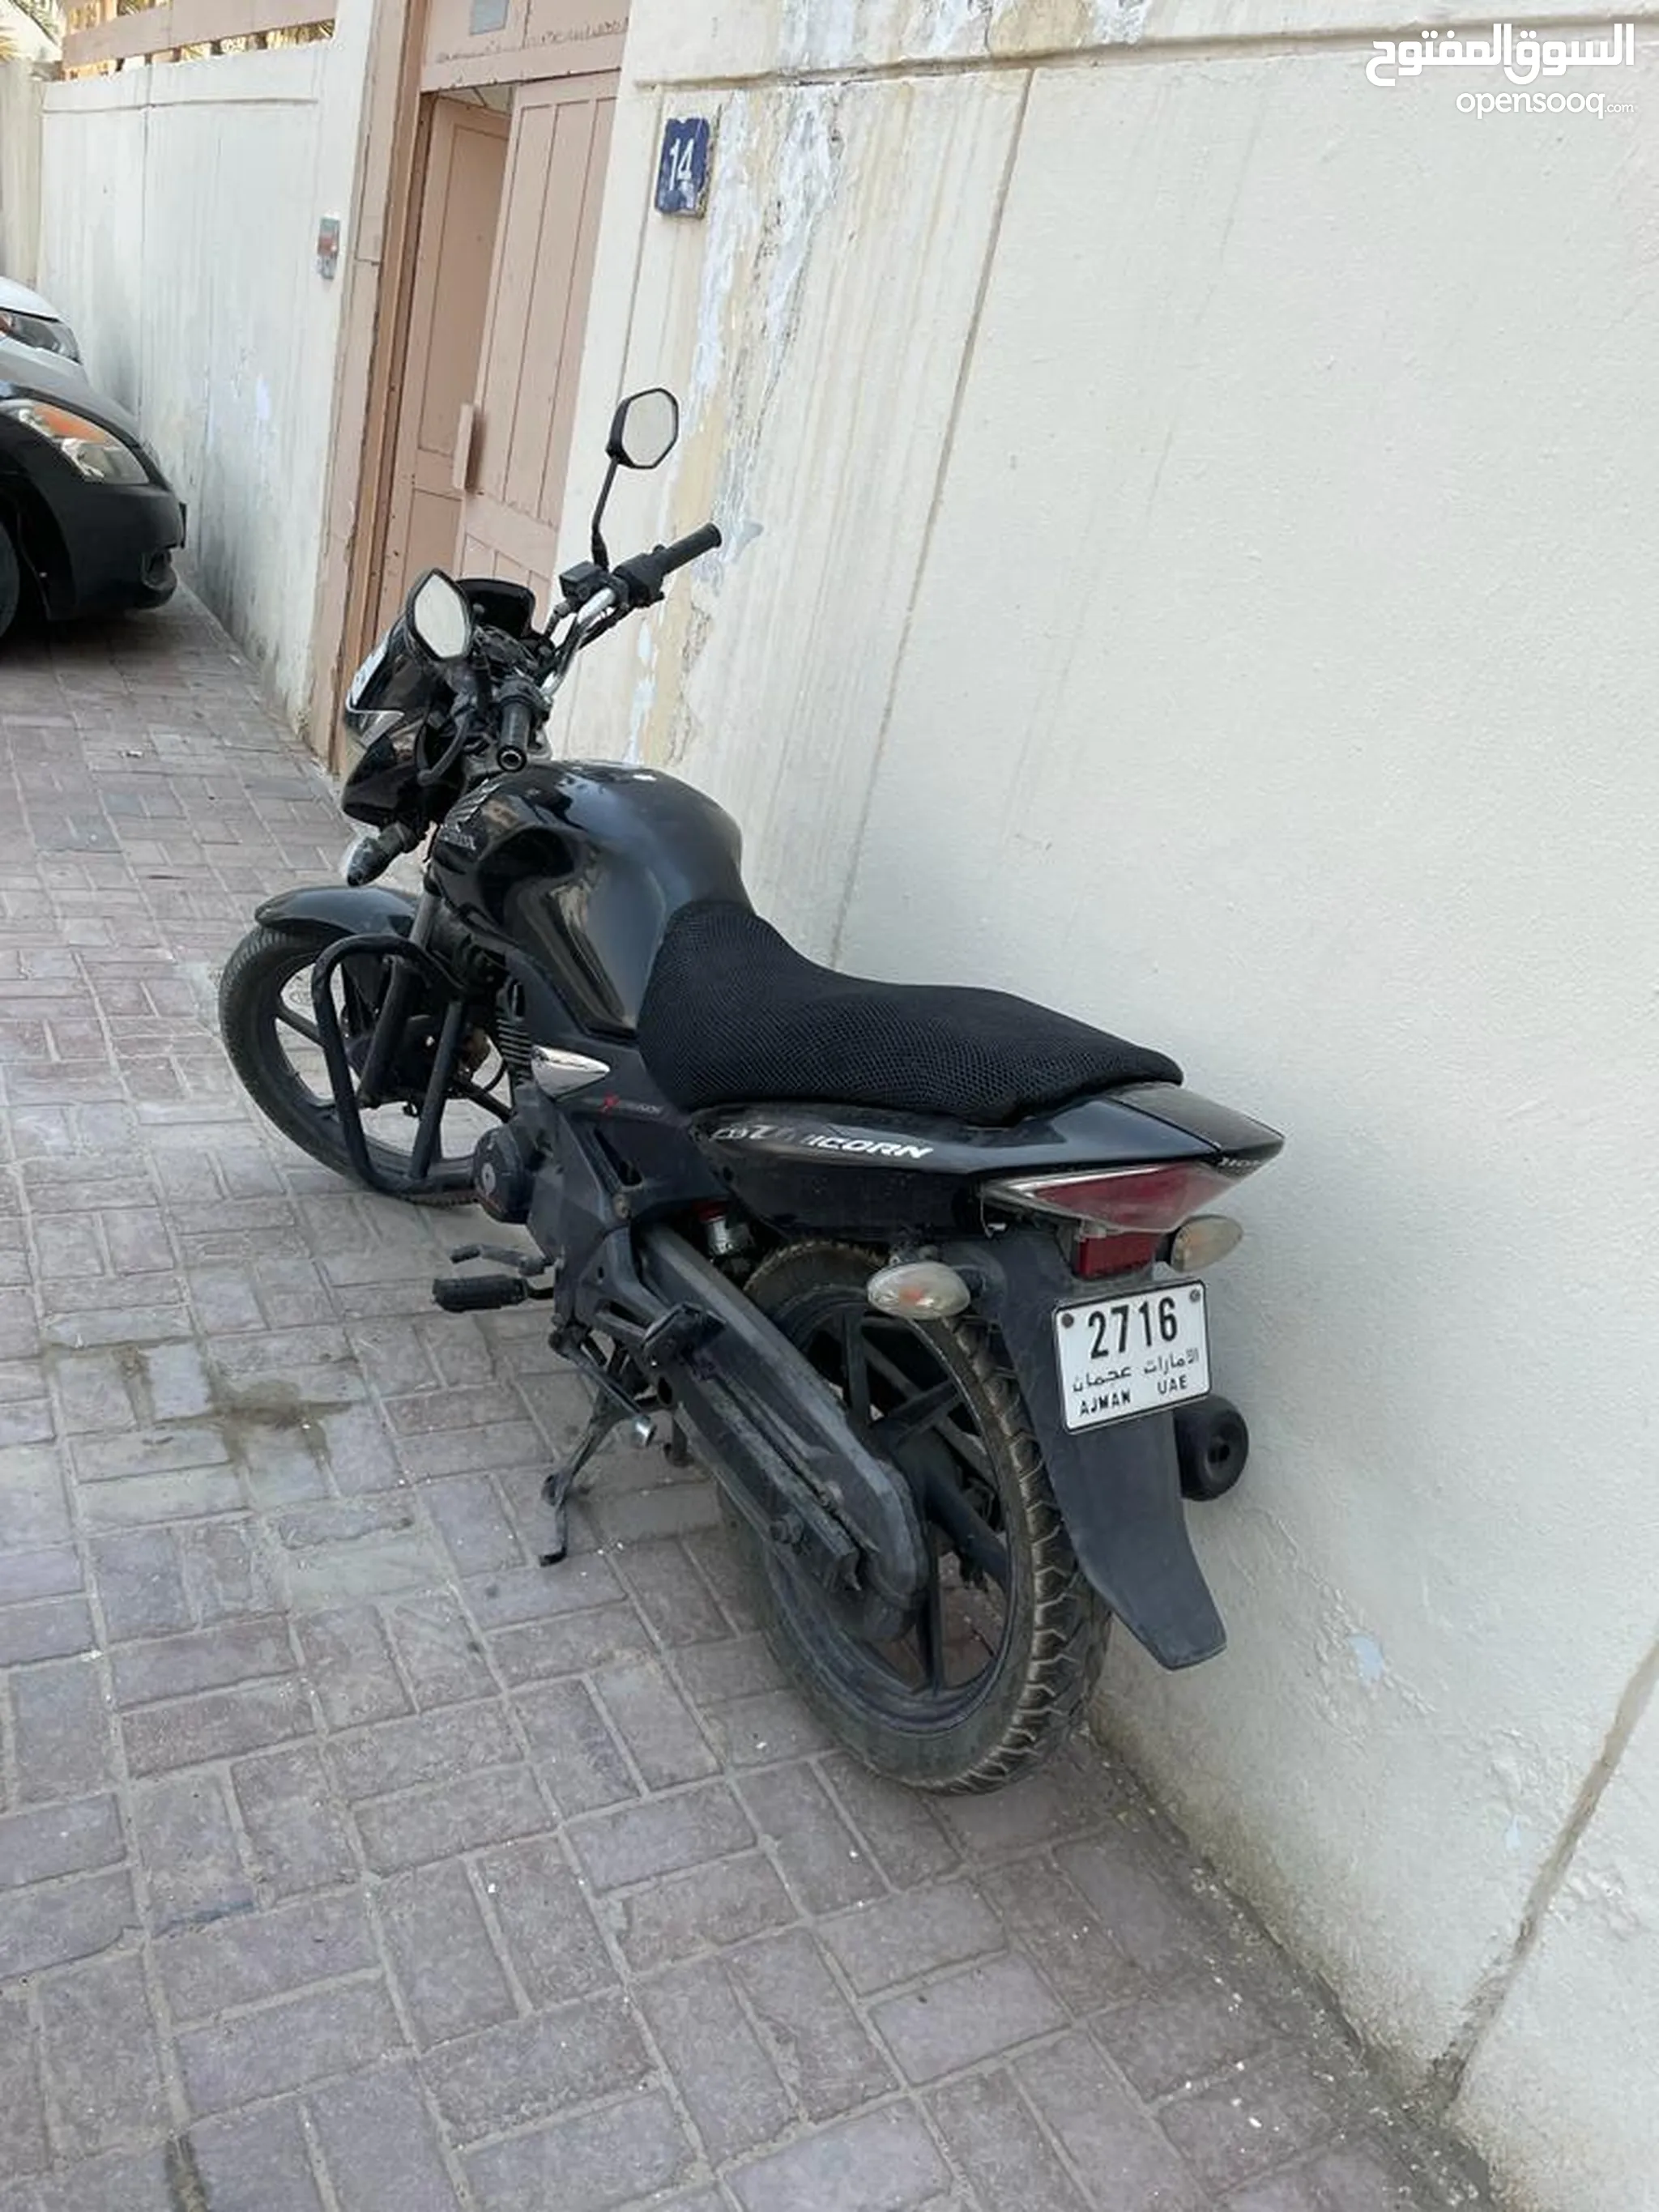 دباب هوندا CRF150R للبيع في الإمارات : دراجات مستعملة وجديدة : ارخص الاسعار  | السوق المفتوح